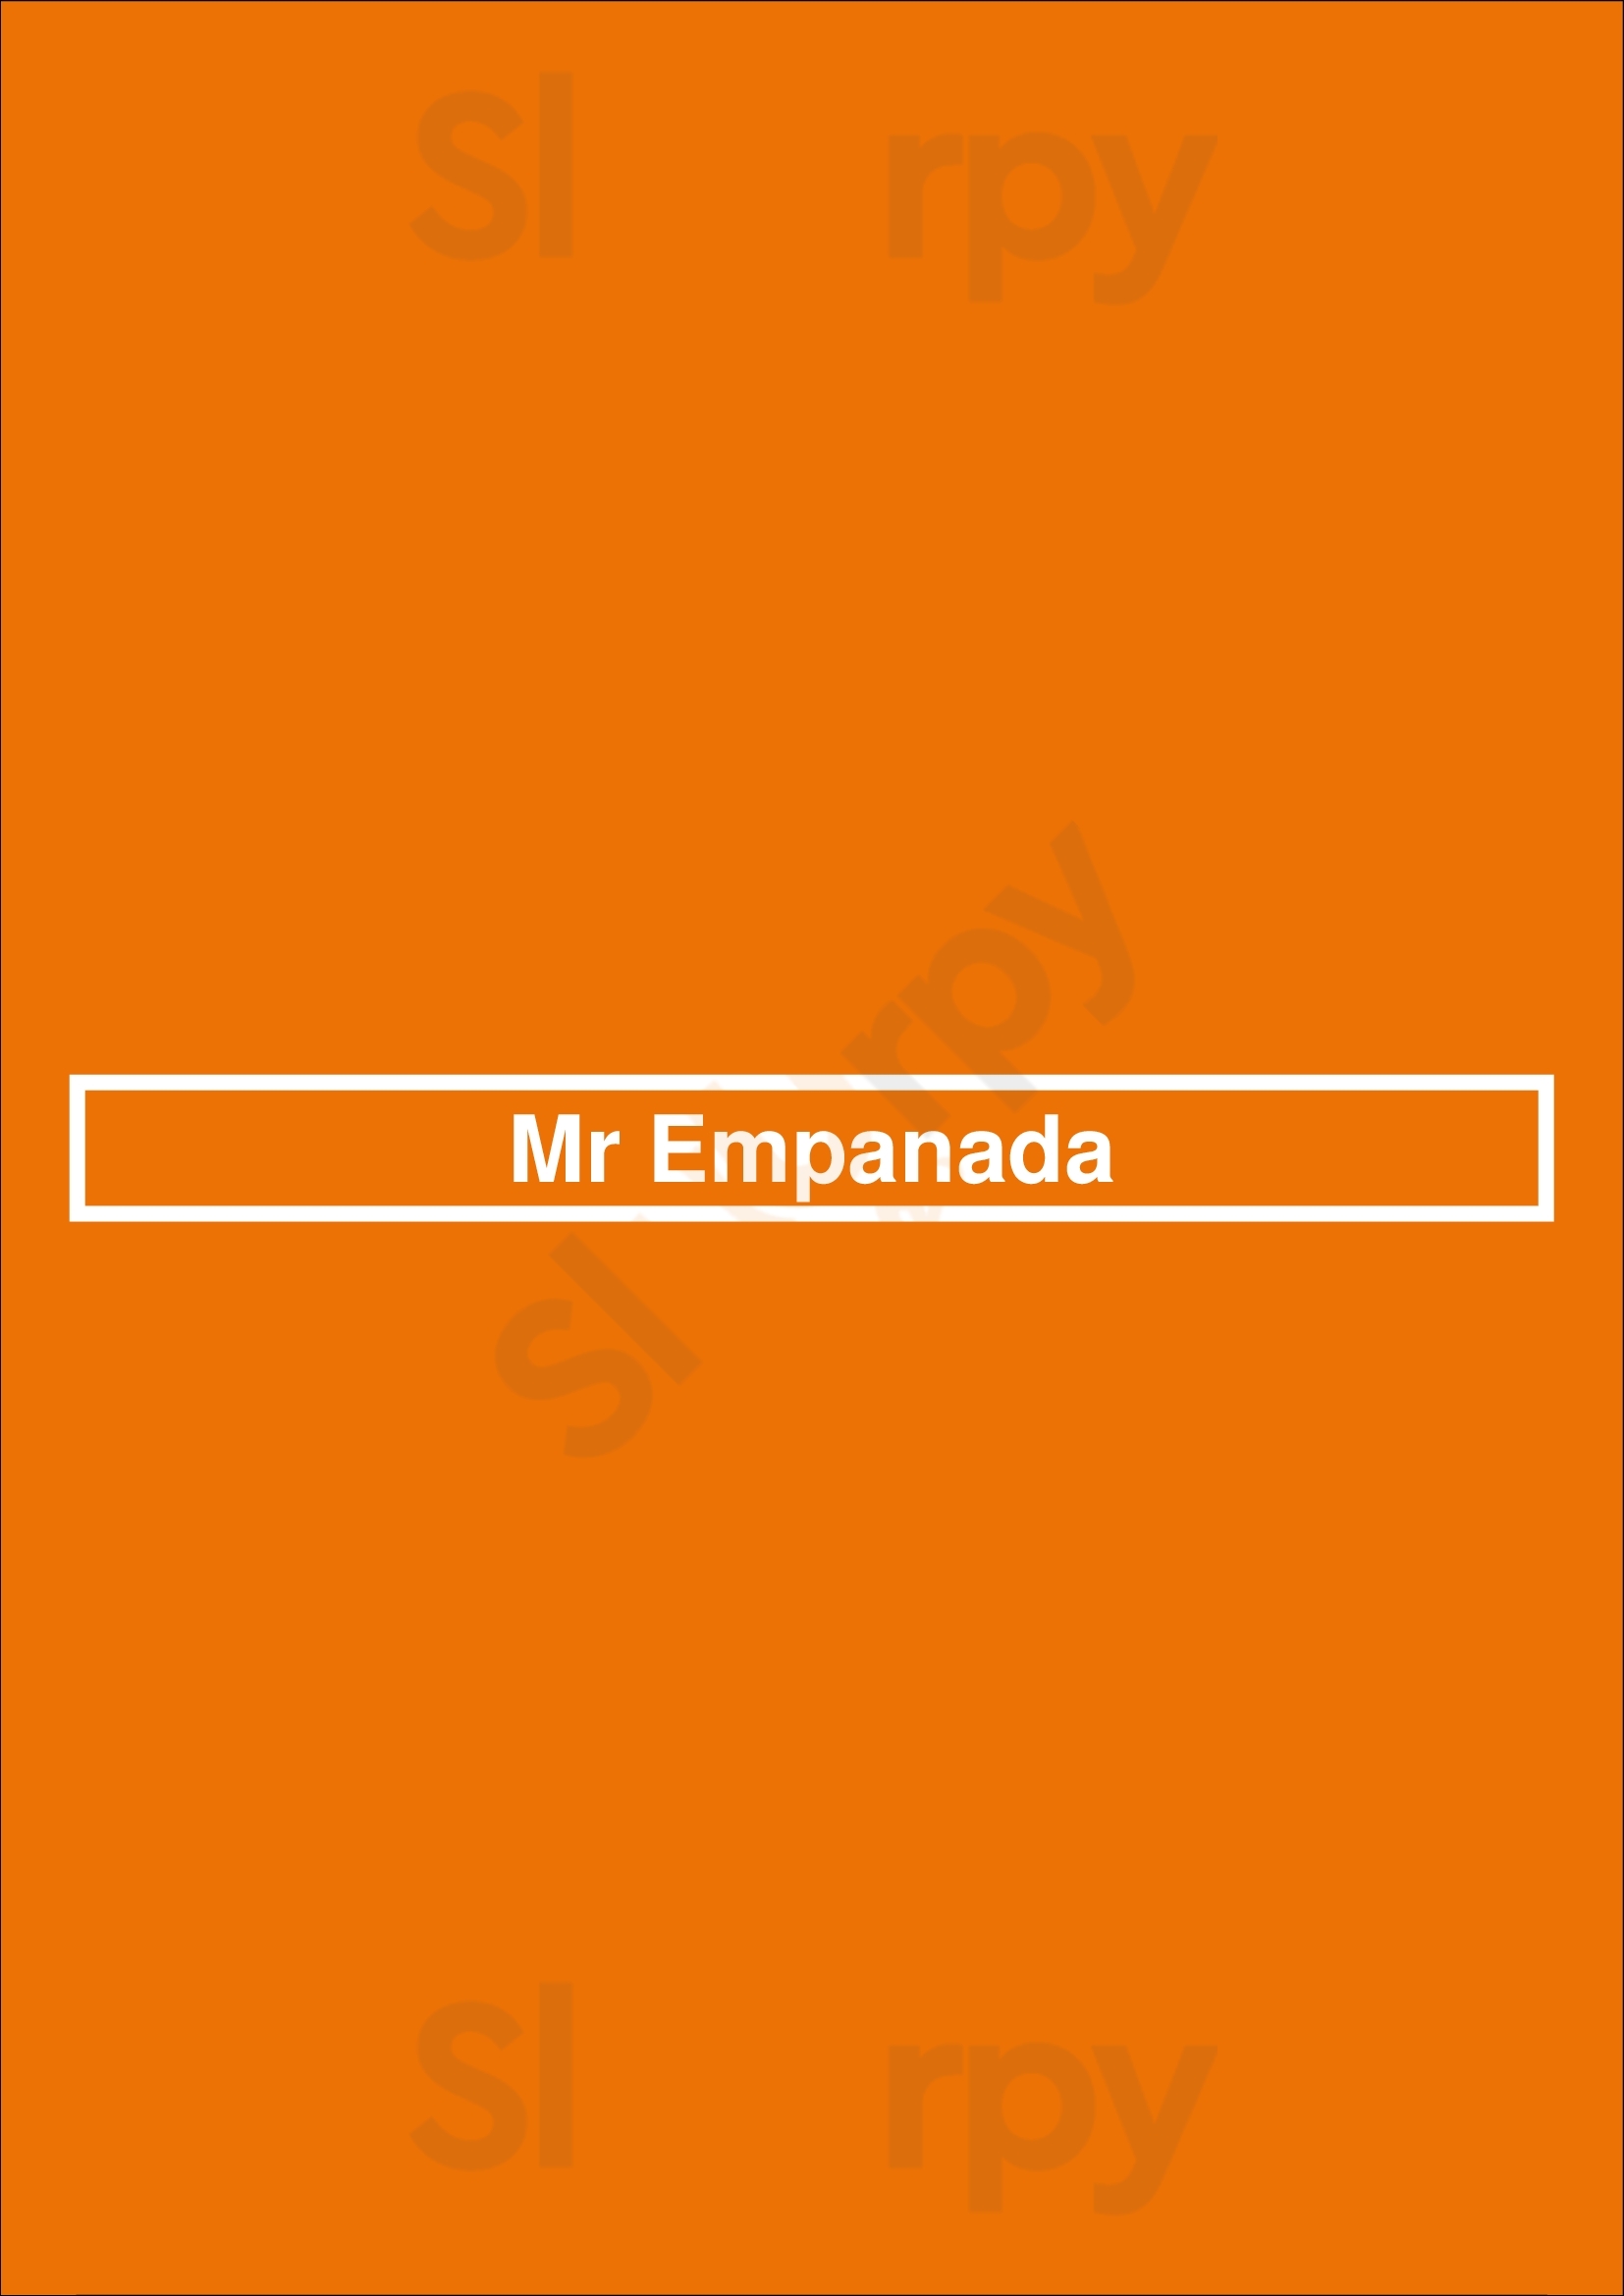 Mr Empanada Tampa Menu - 1